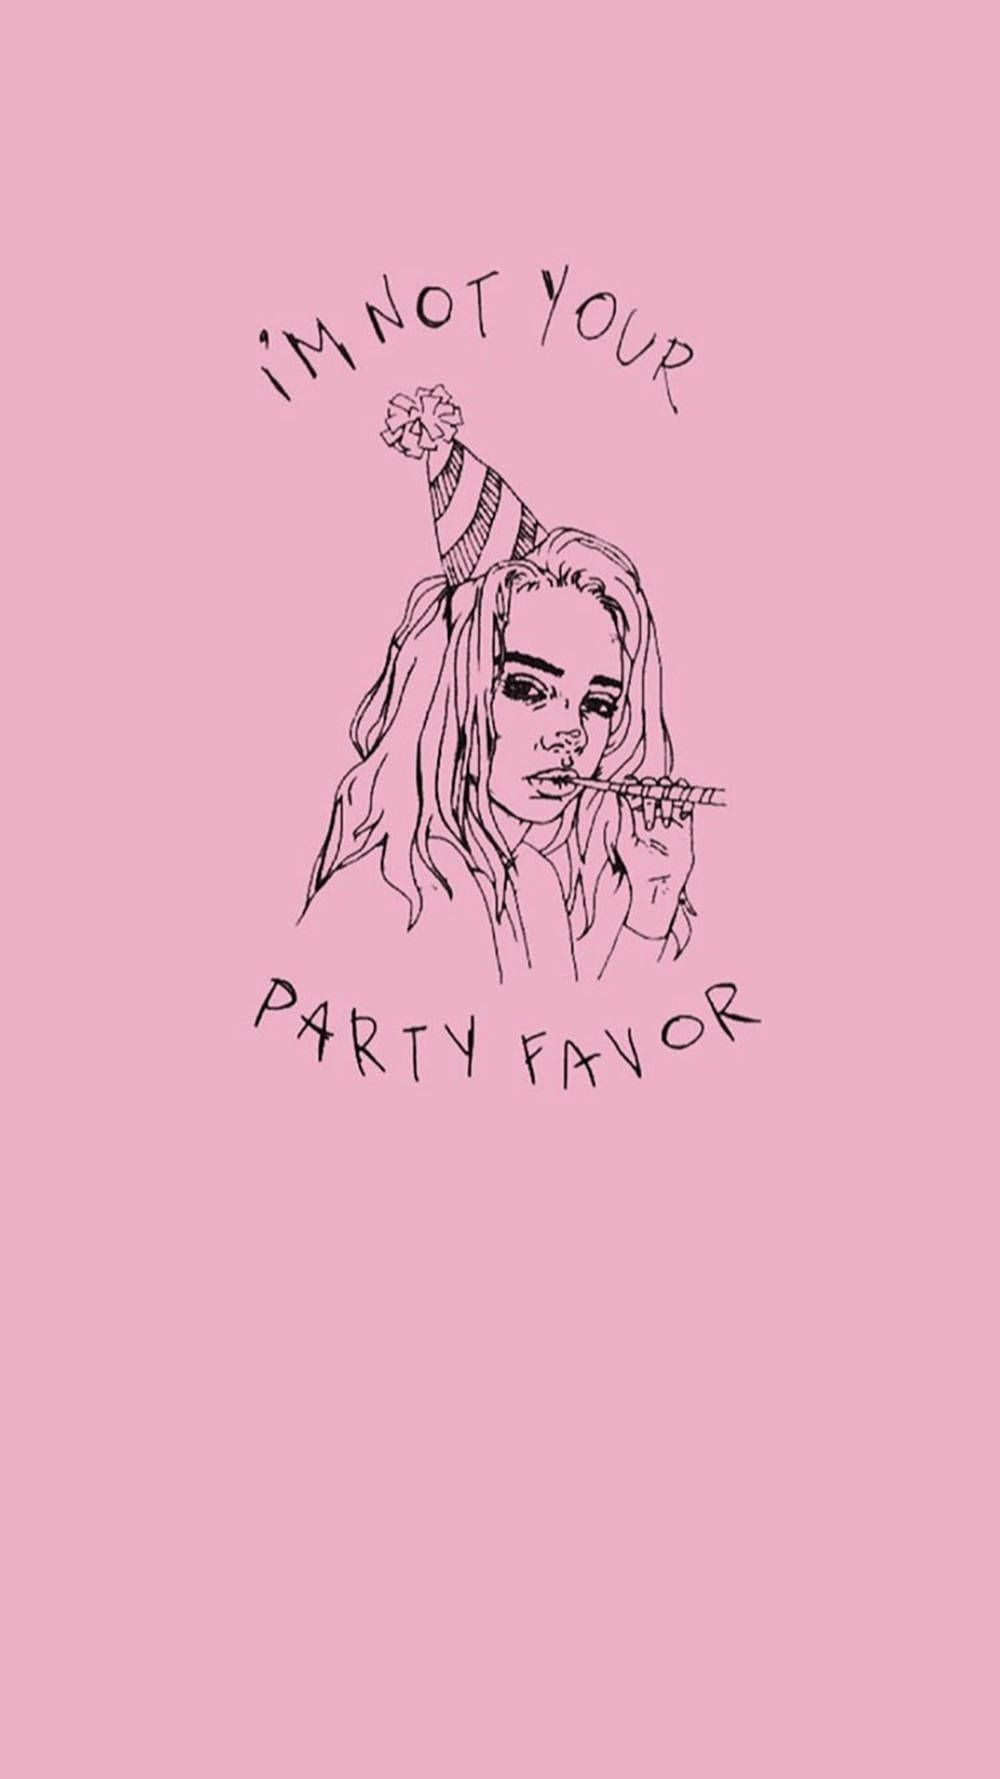  Billie Eilish Hintergrundbild 1000x1779. Download Aesthetic Billie Eilish Pink Aesthetic Party Favor Wallpaper